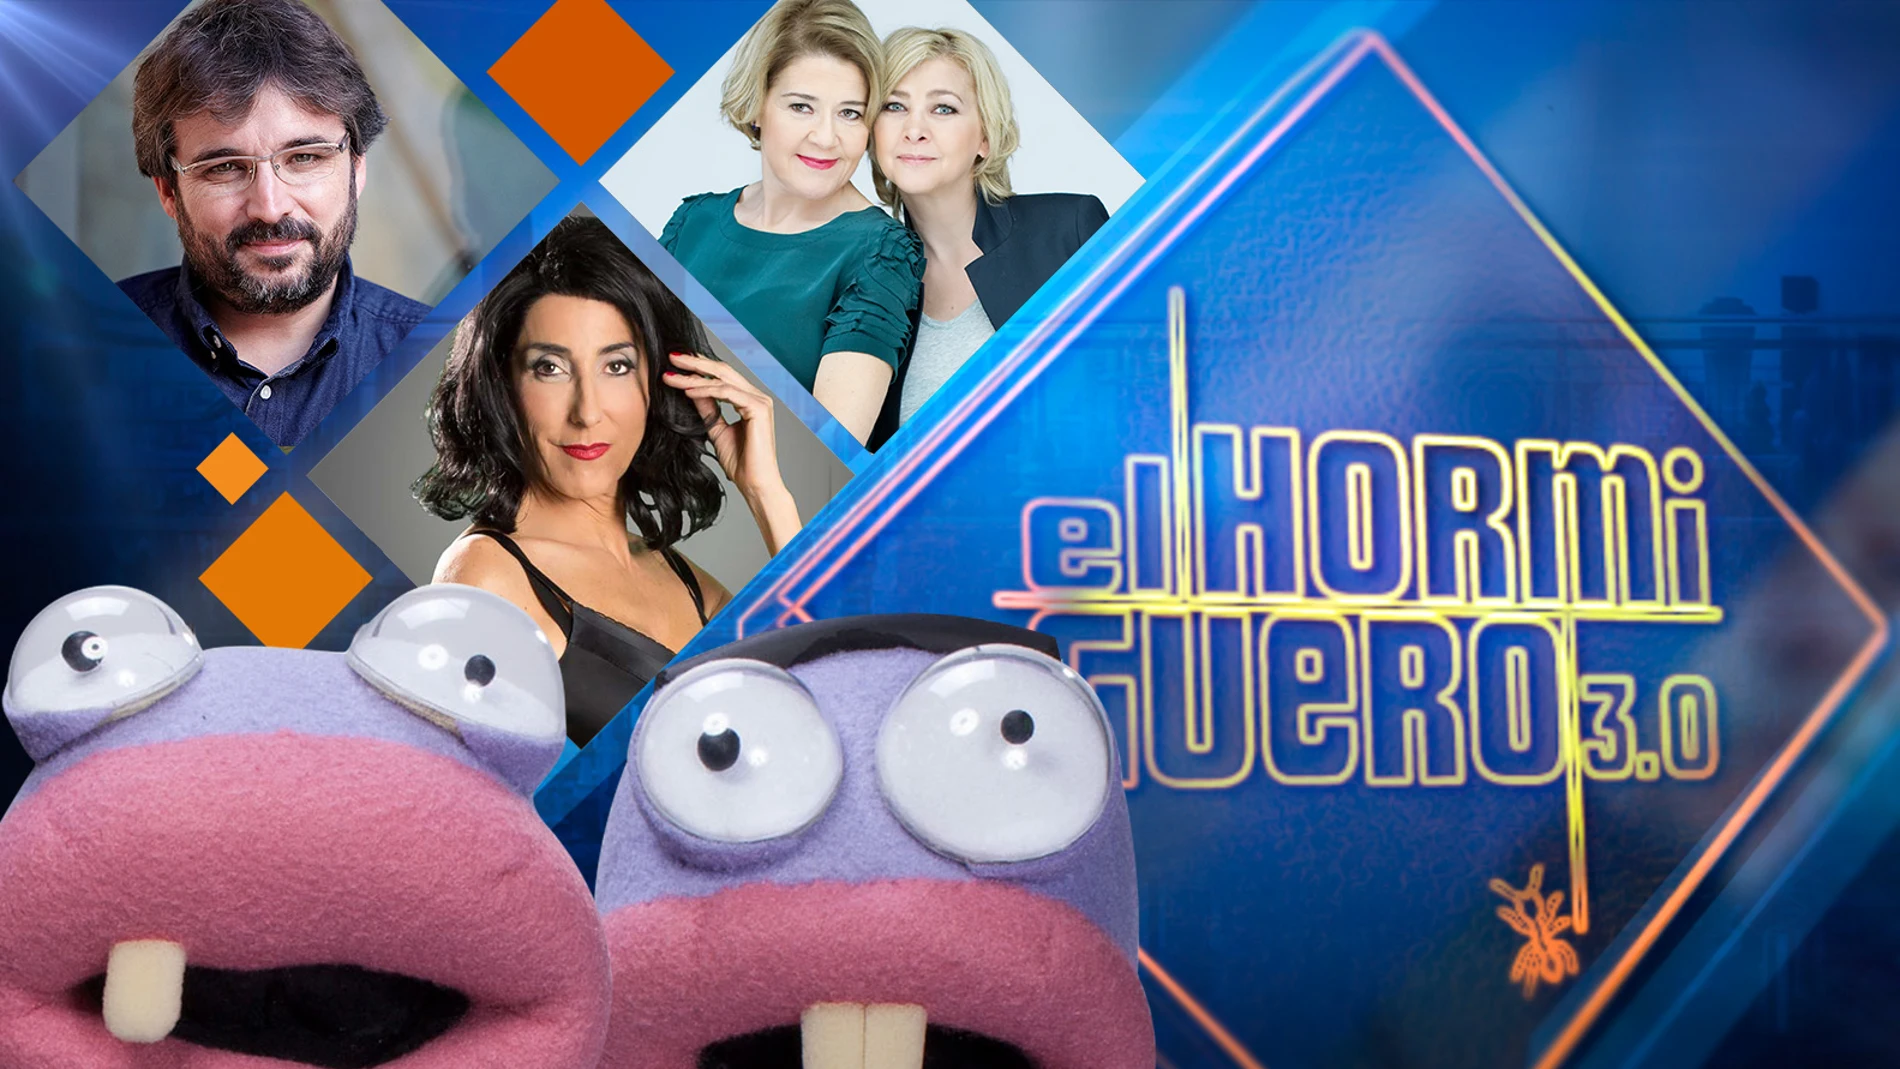 Paz Padilla, Amparo Larrañaga y María Pujalte, y Jordi Évole visitarán 'El Hormiguero 3.0' la próxima semana